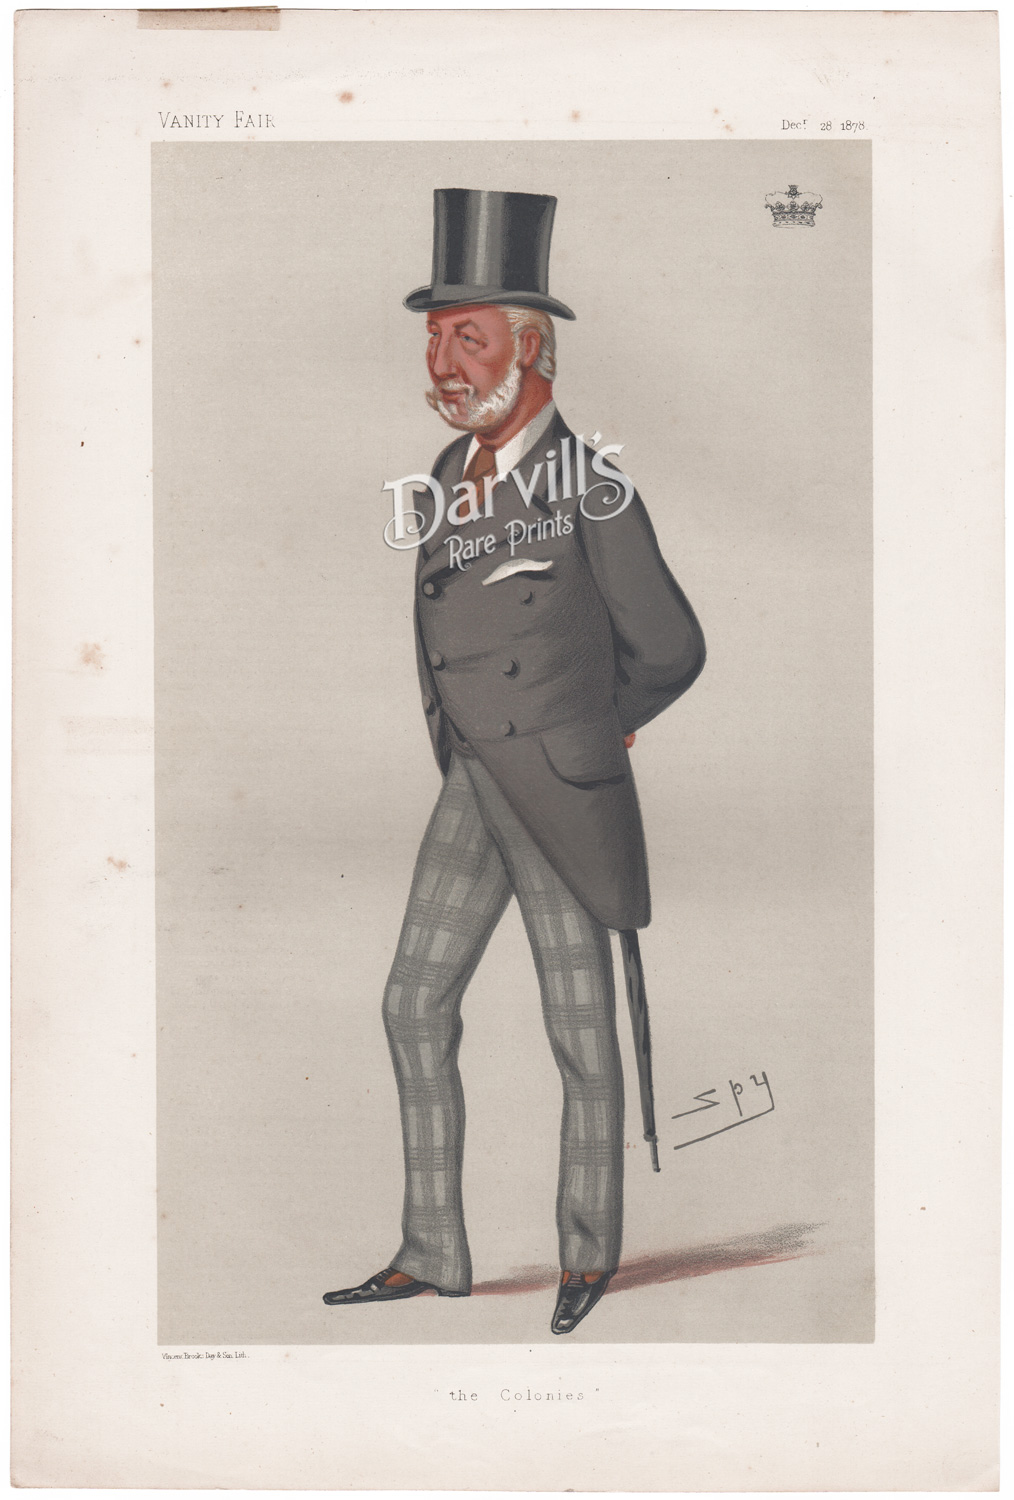 The Duke of Manchester Dec 28 1878